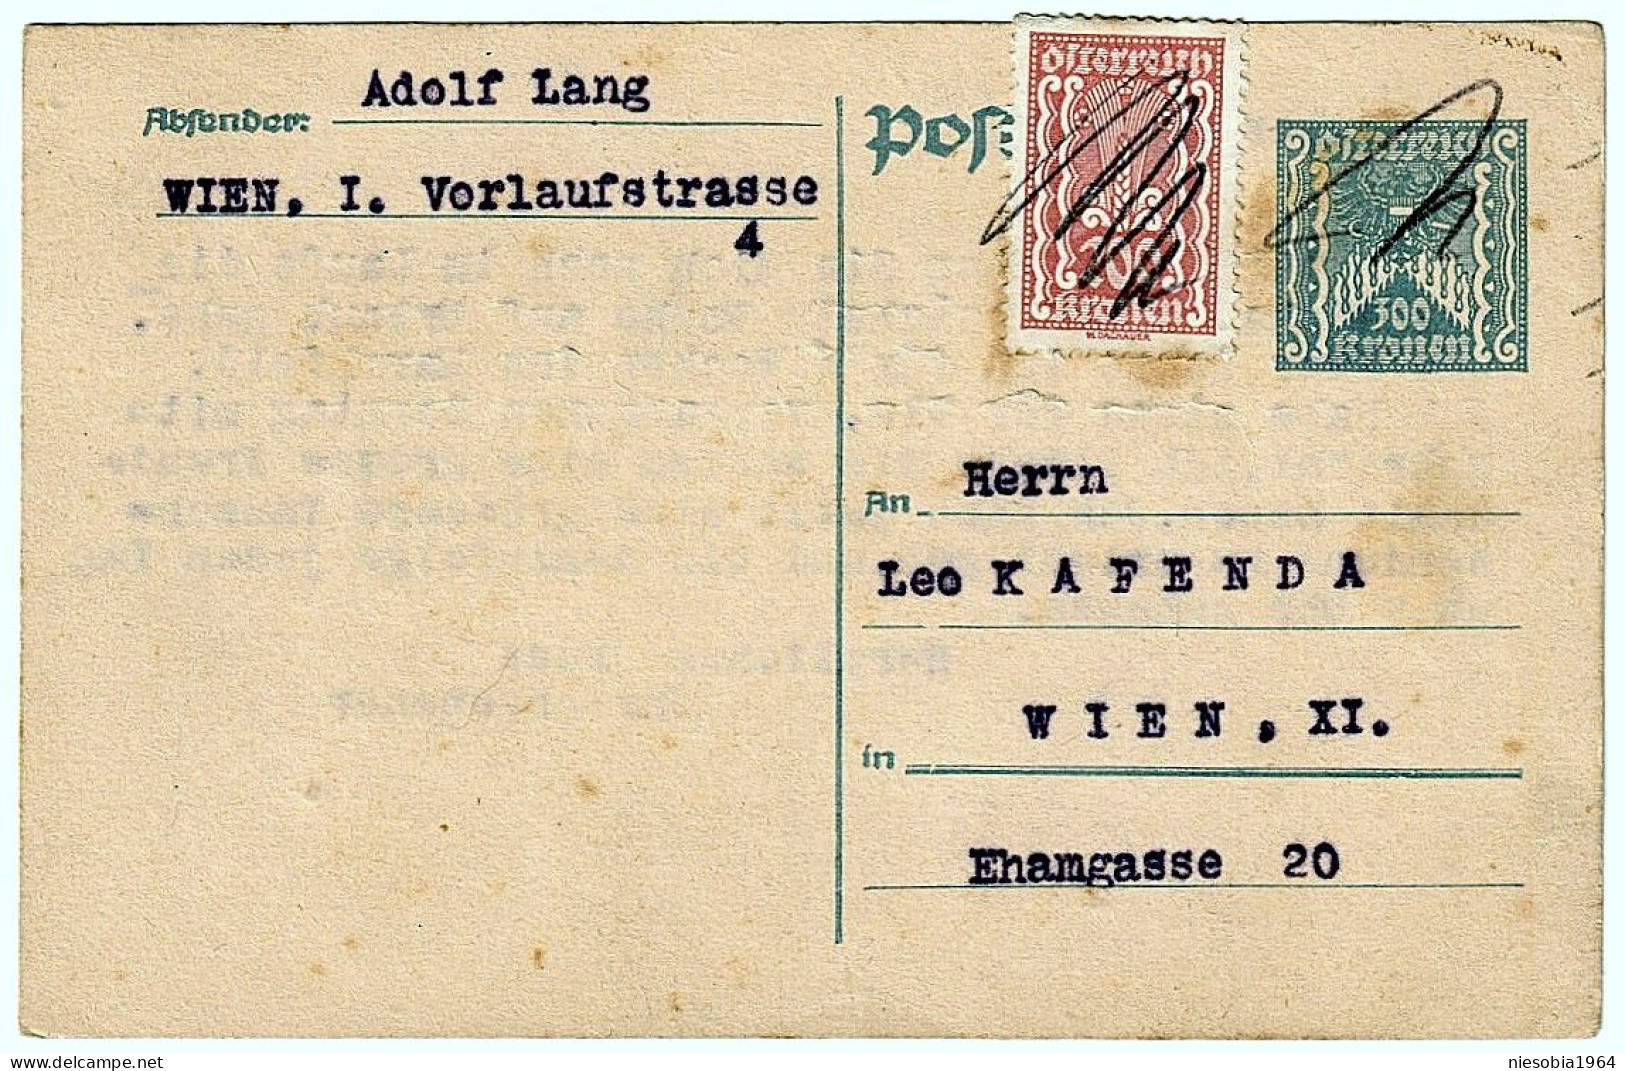 Austria Postcard, Two Stamps 200 Kronen & 300 Kronen Wien 20 III 1924 - Covers & Documents